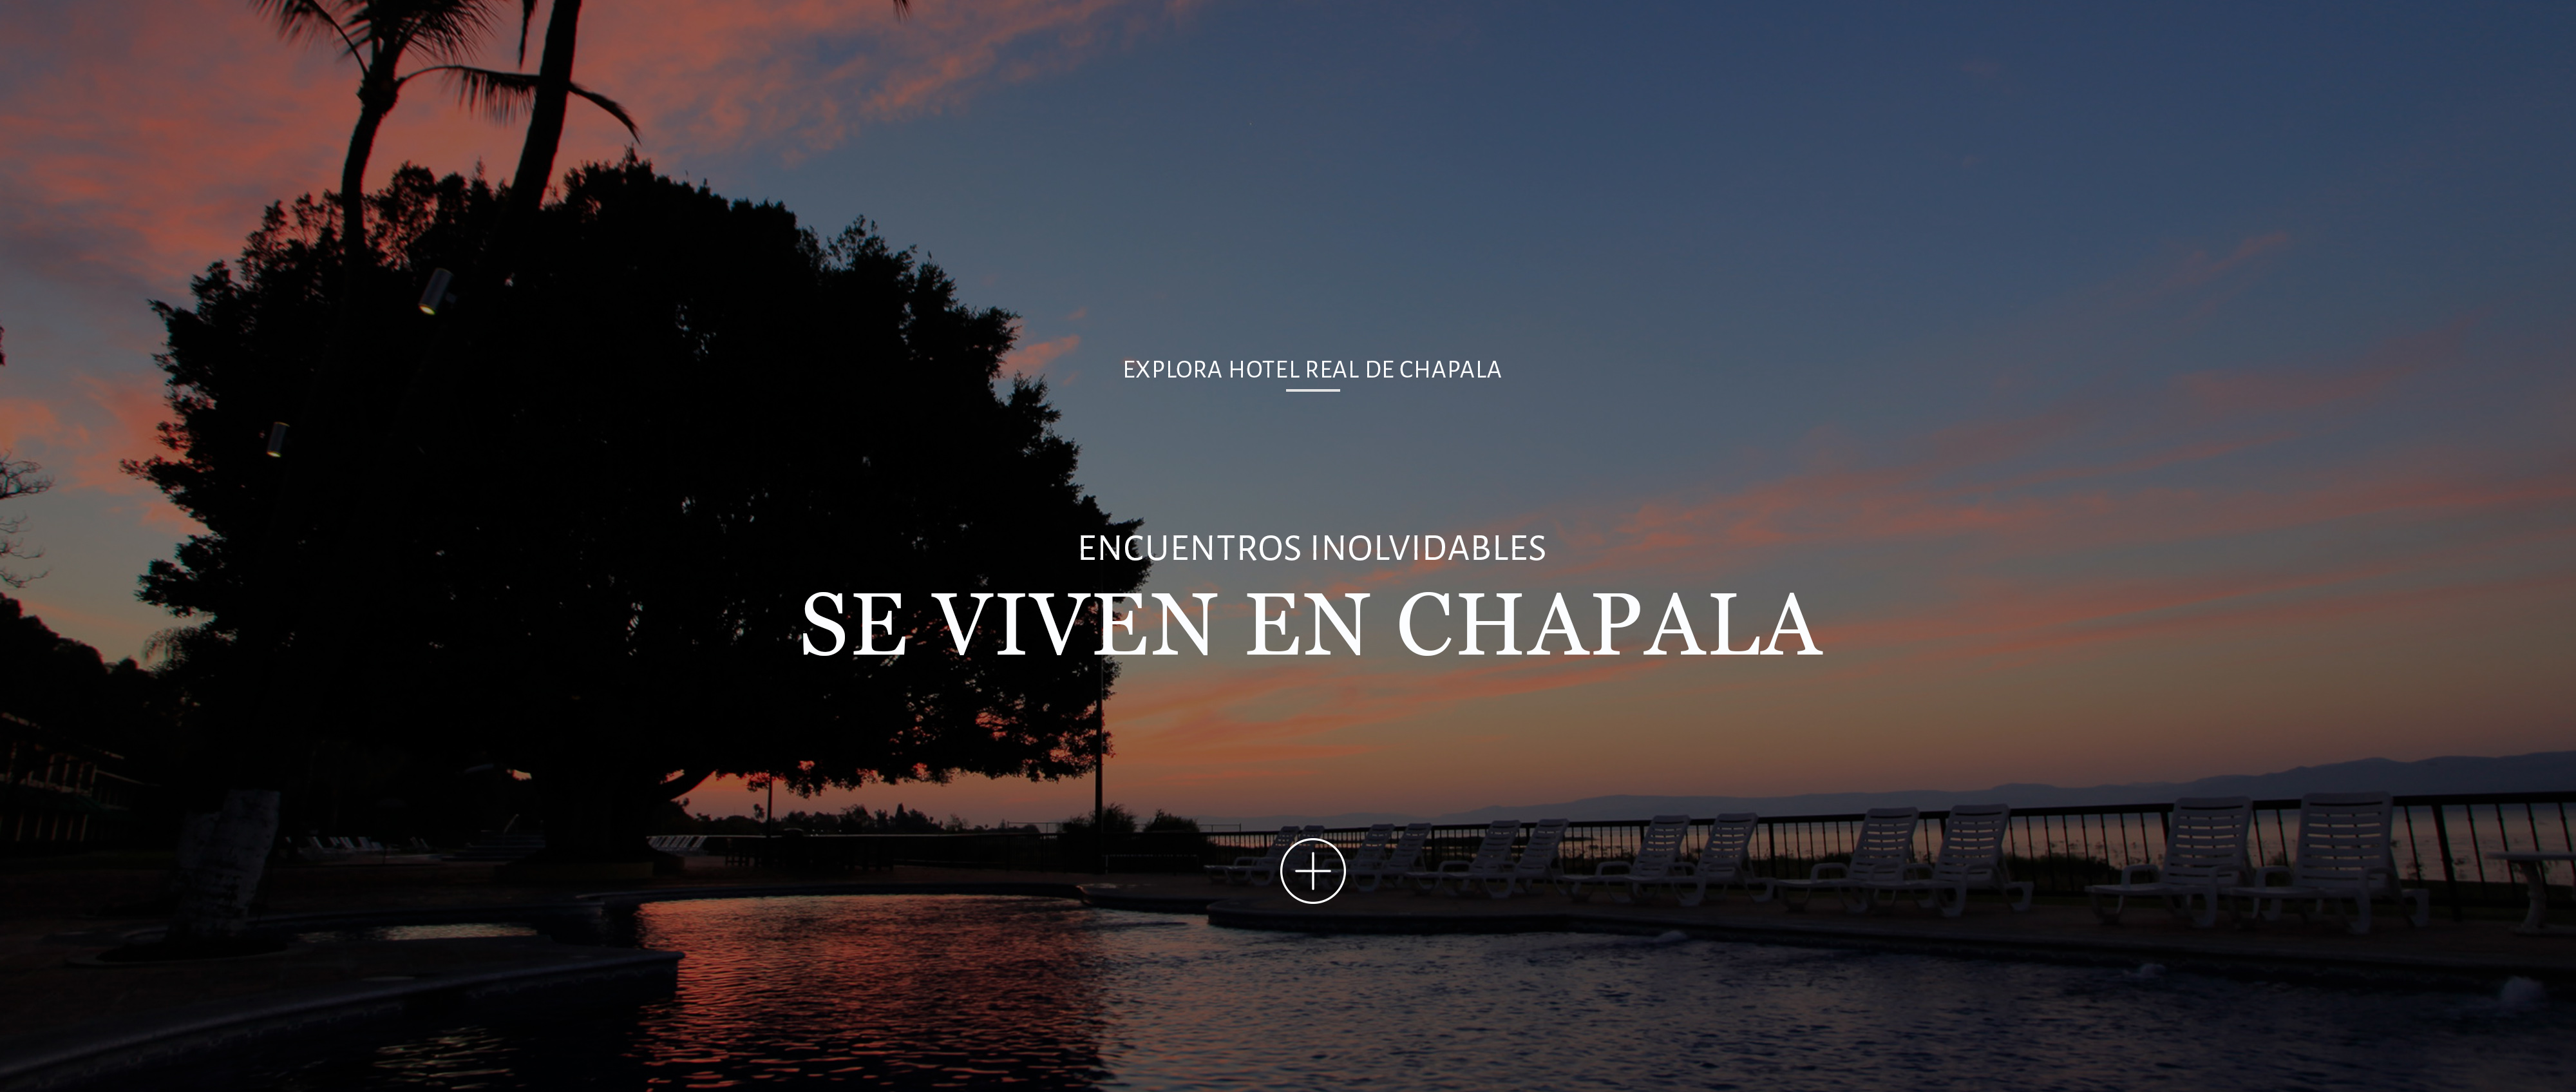 Hotel Real de Chapala, Vacaciones, Eventos, Grupos, descanso, ribera